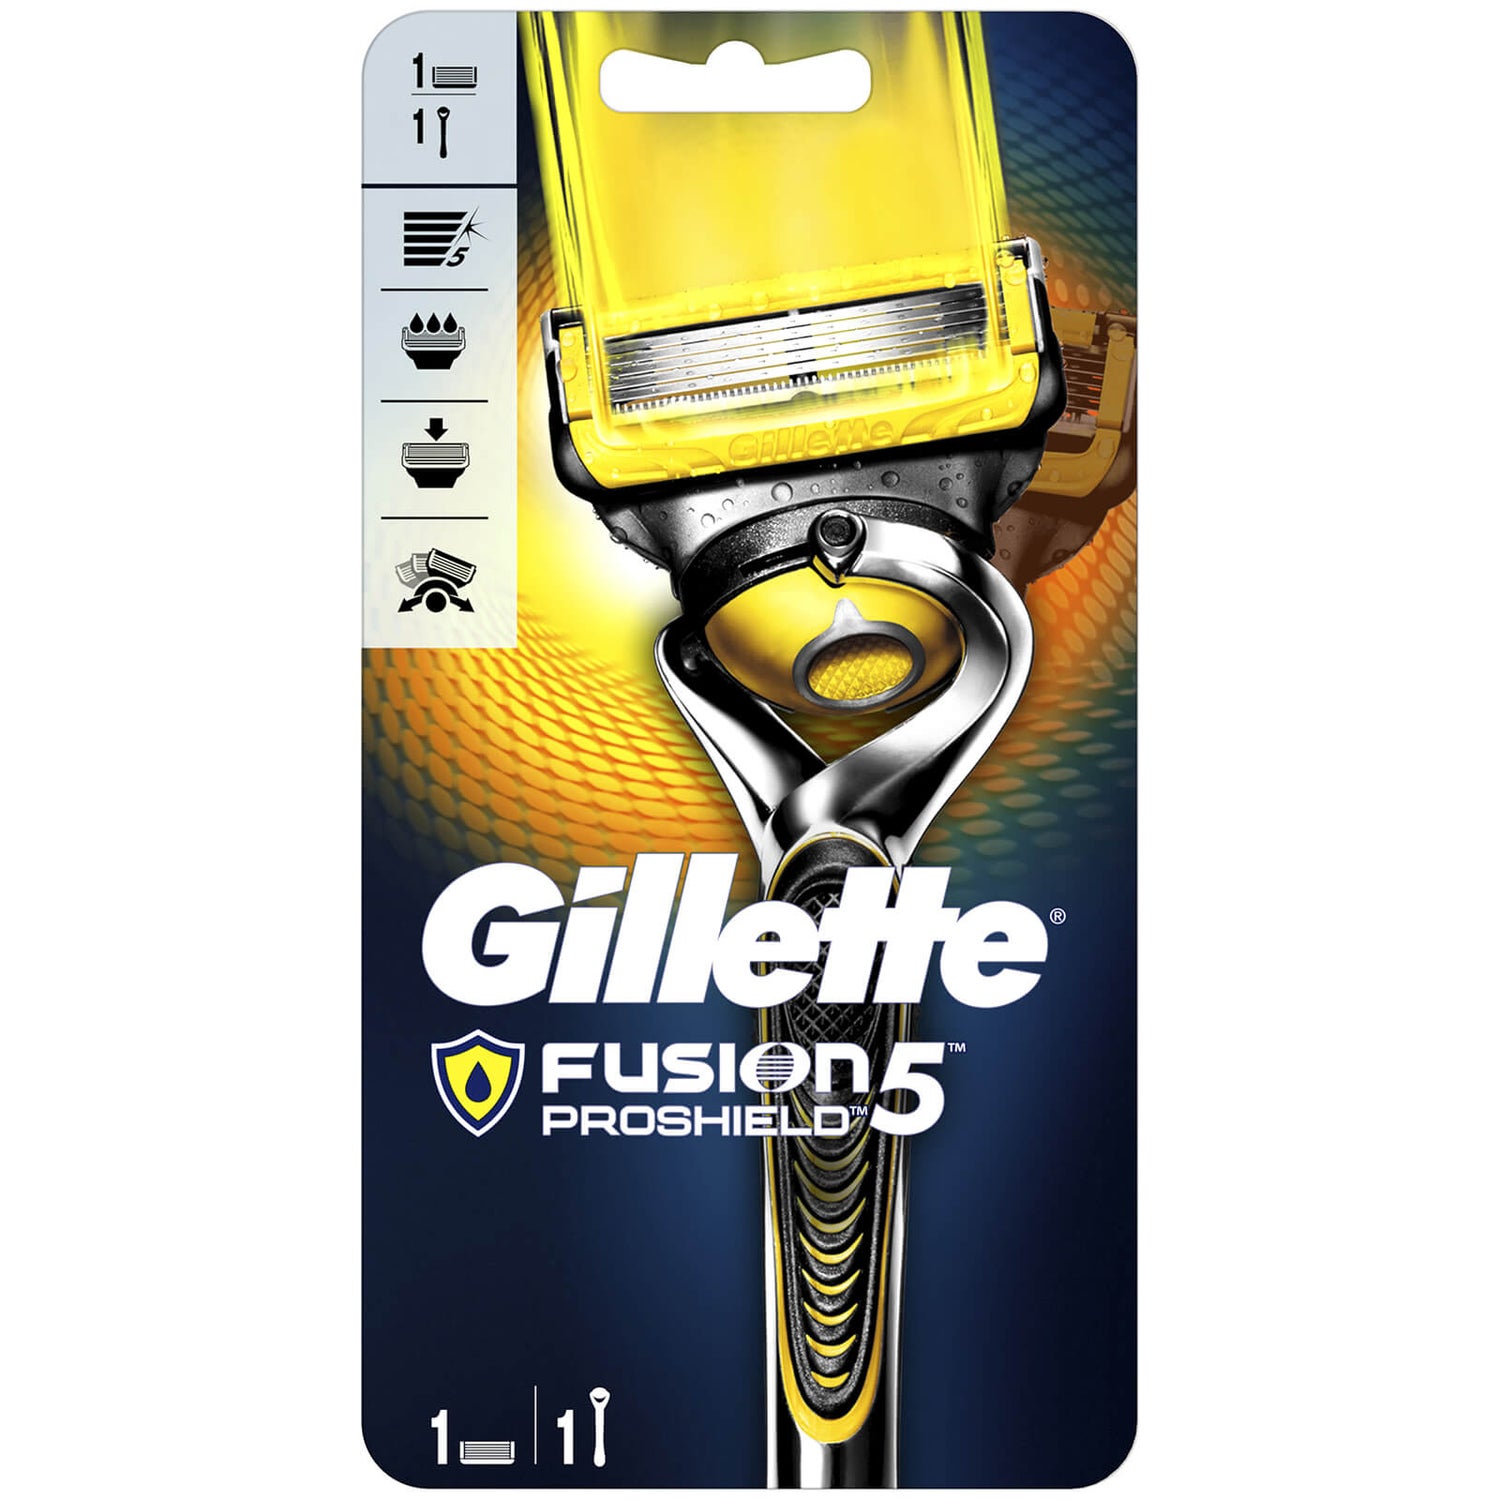 Gillette Fusion5 ProShield Razor